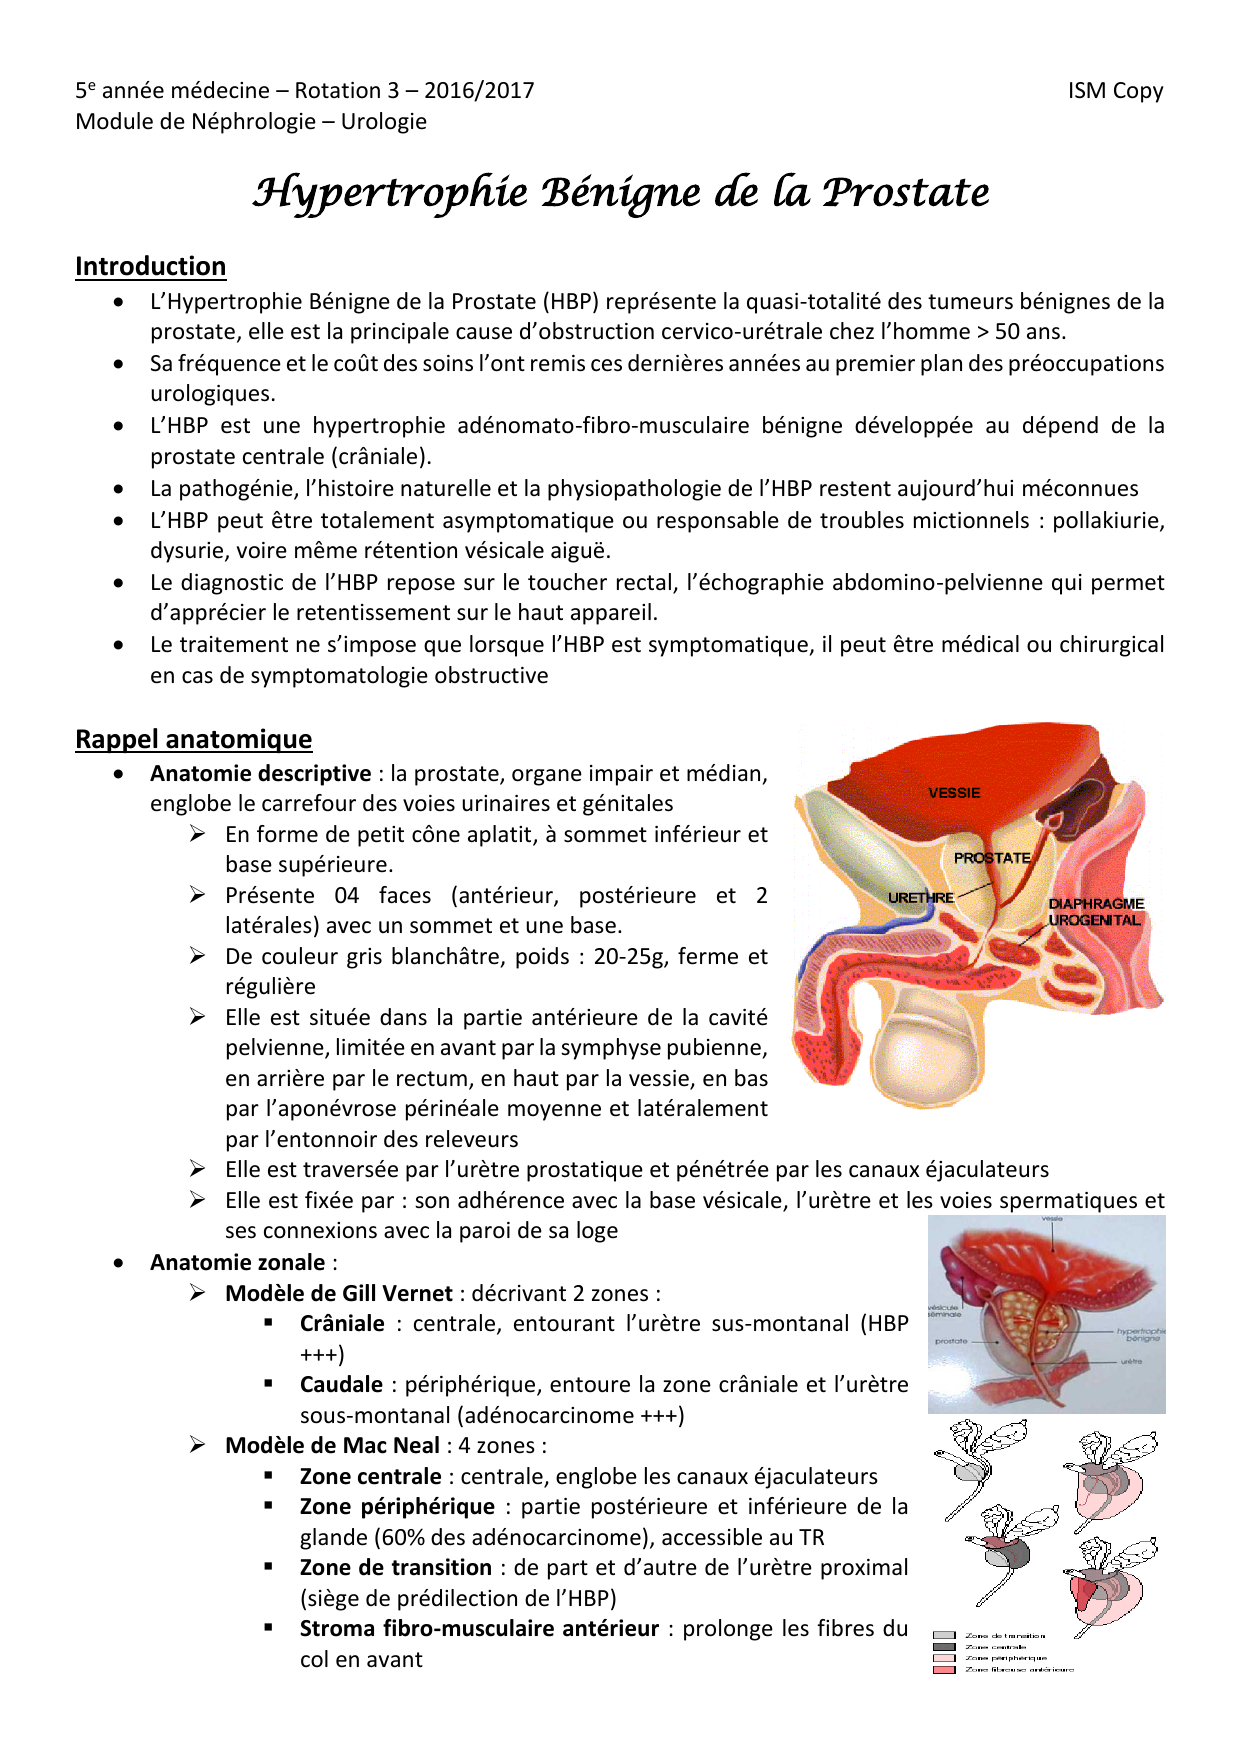 Operacion cancer de colon complicaciones - Virus papiloma laringeo, Cancer de colon operacion